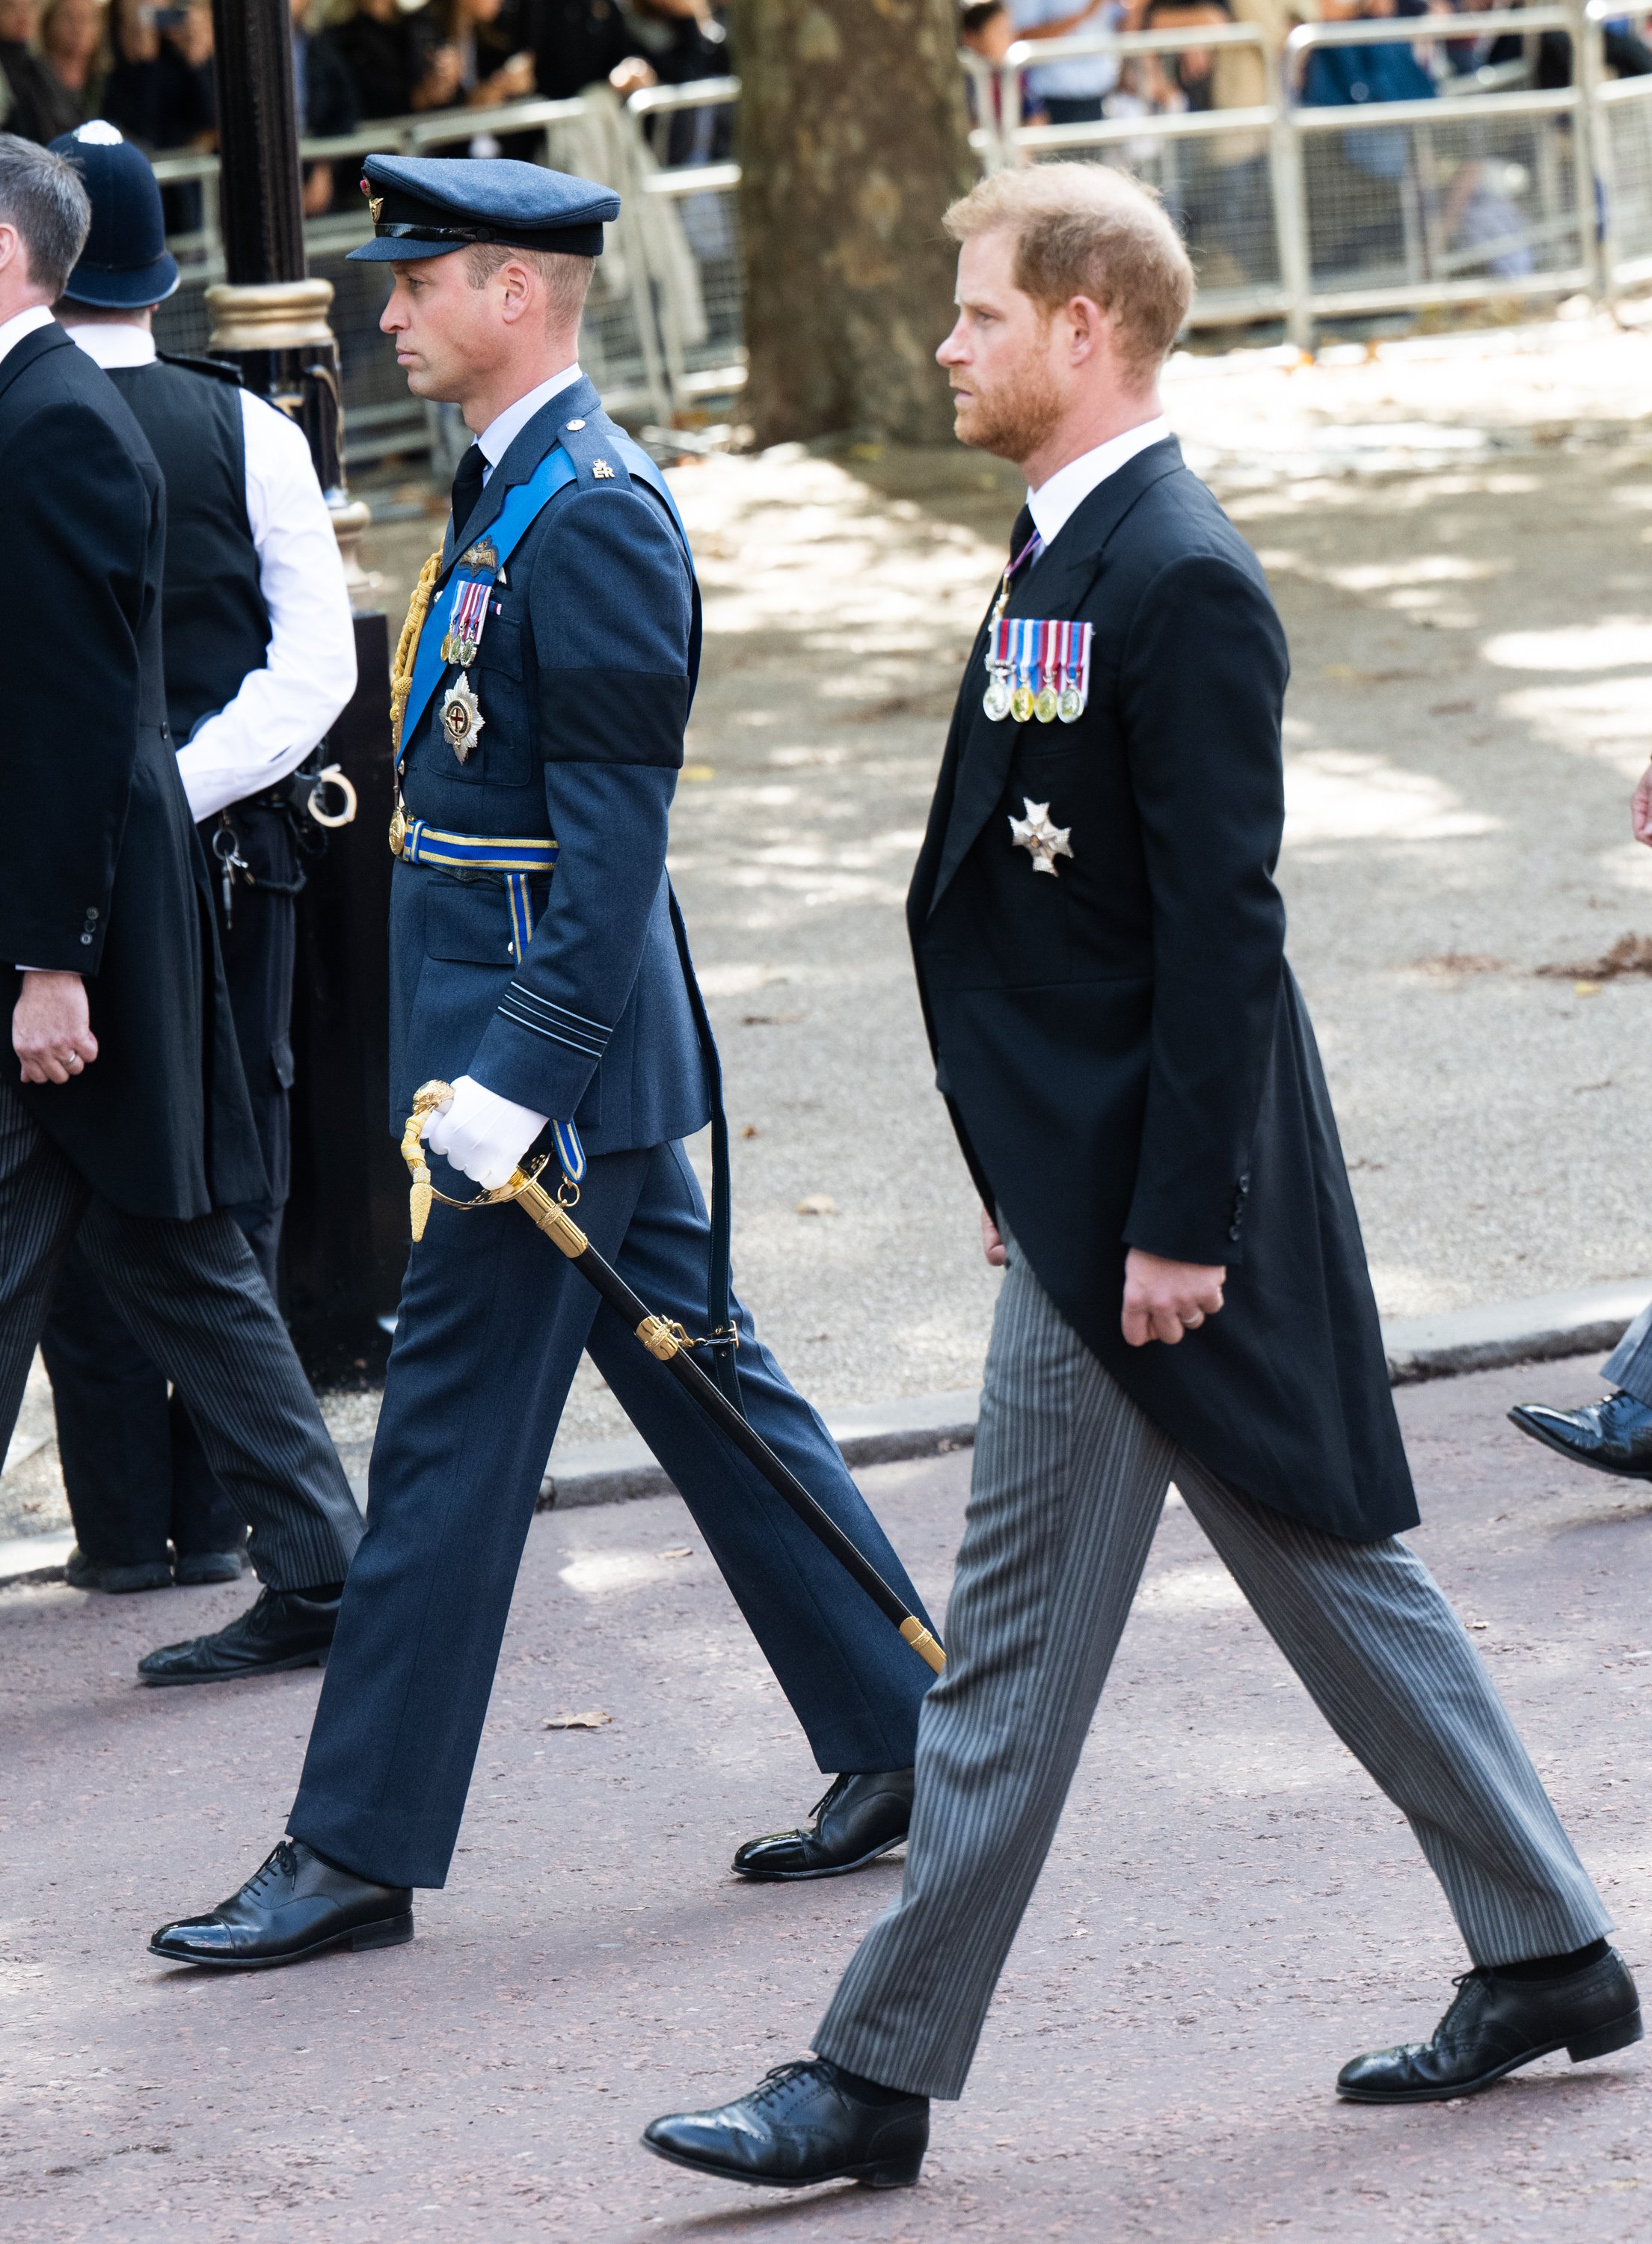 El príncipe William, príncipe de Gales, y el príncipe Harry, duque de Sussex, caminando detrás del ataúd de la reina Elizabeth II, el 19 de septiembre de 2022 en Windsor, Inglaterra. | Foto: Getty Images